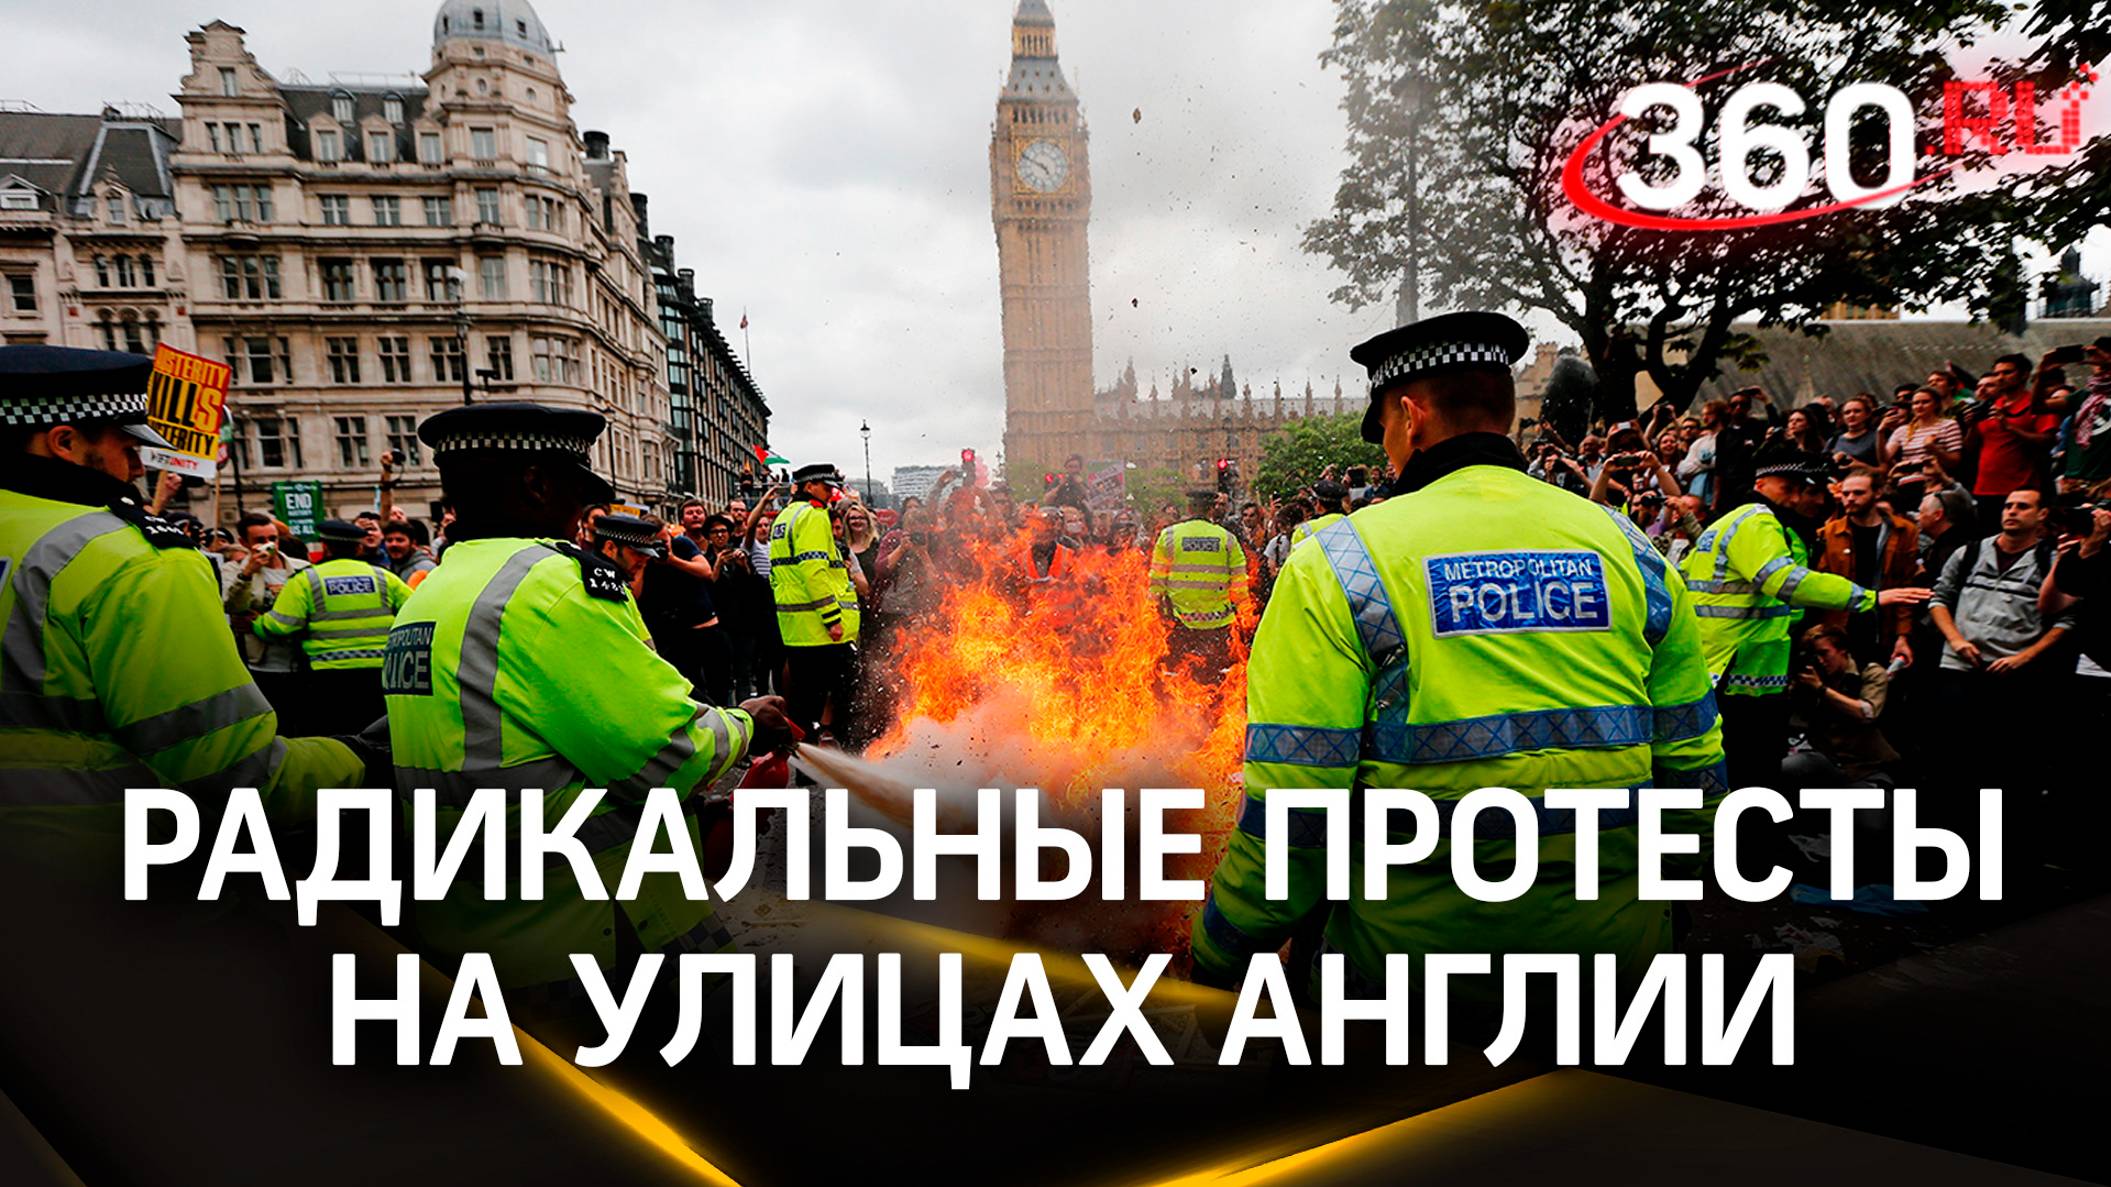 Жгли машины и избивали полицию: радикальные протесты на улицах Англии